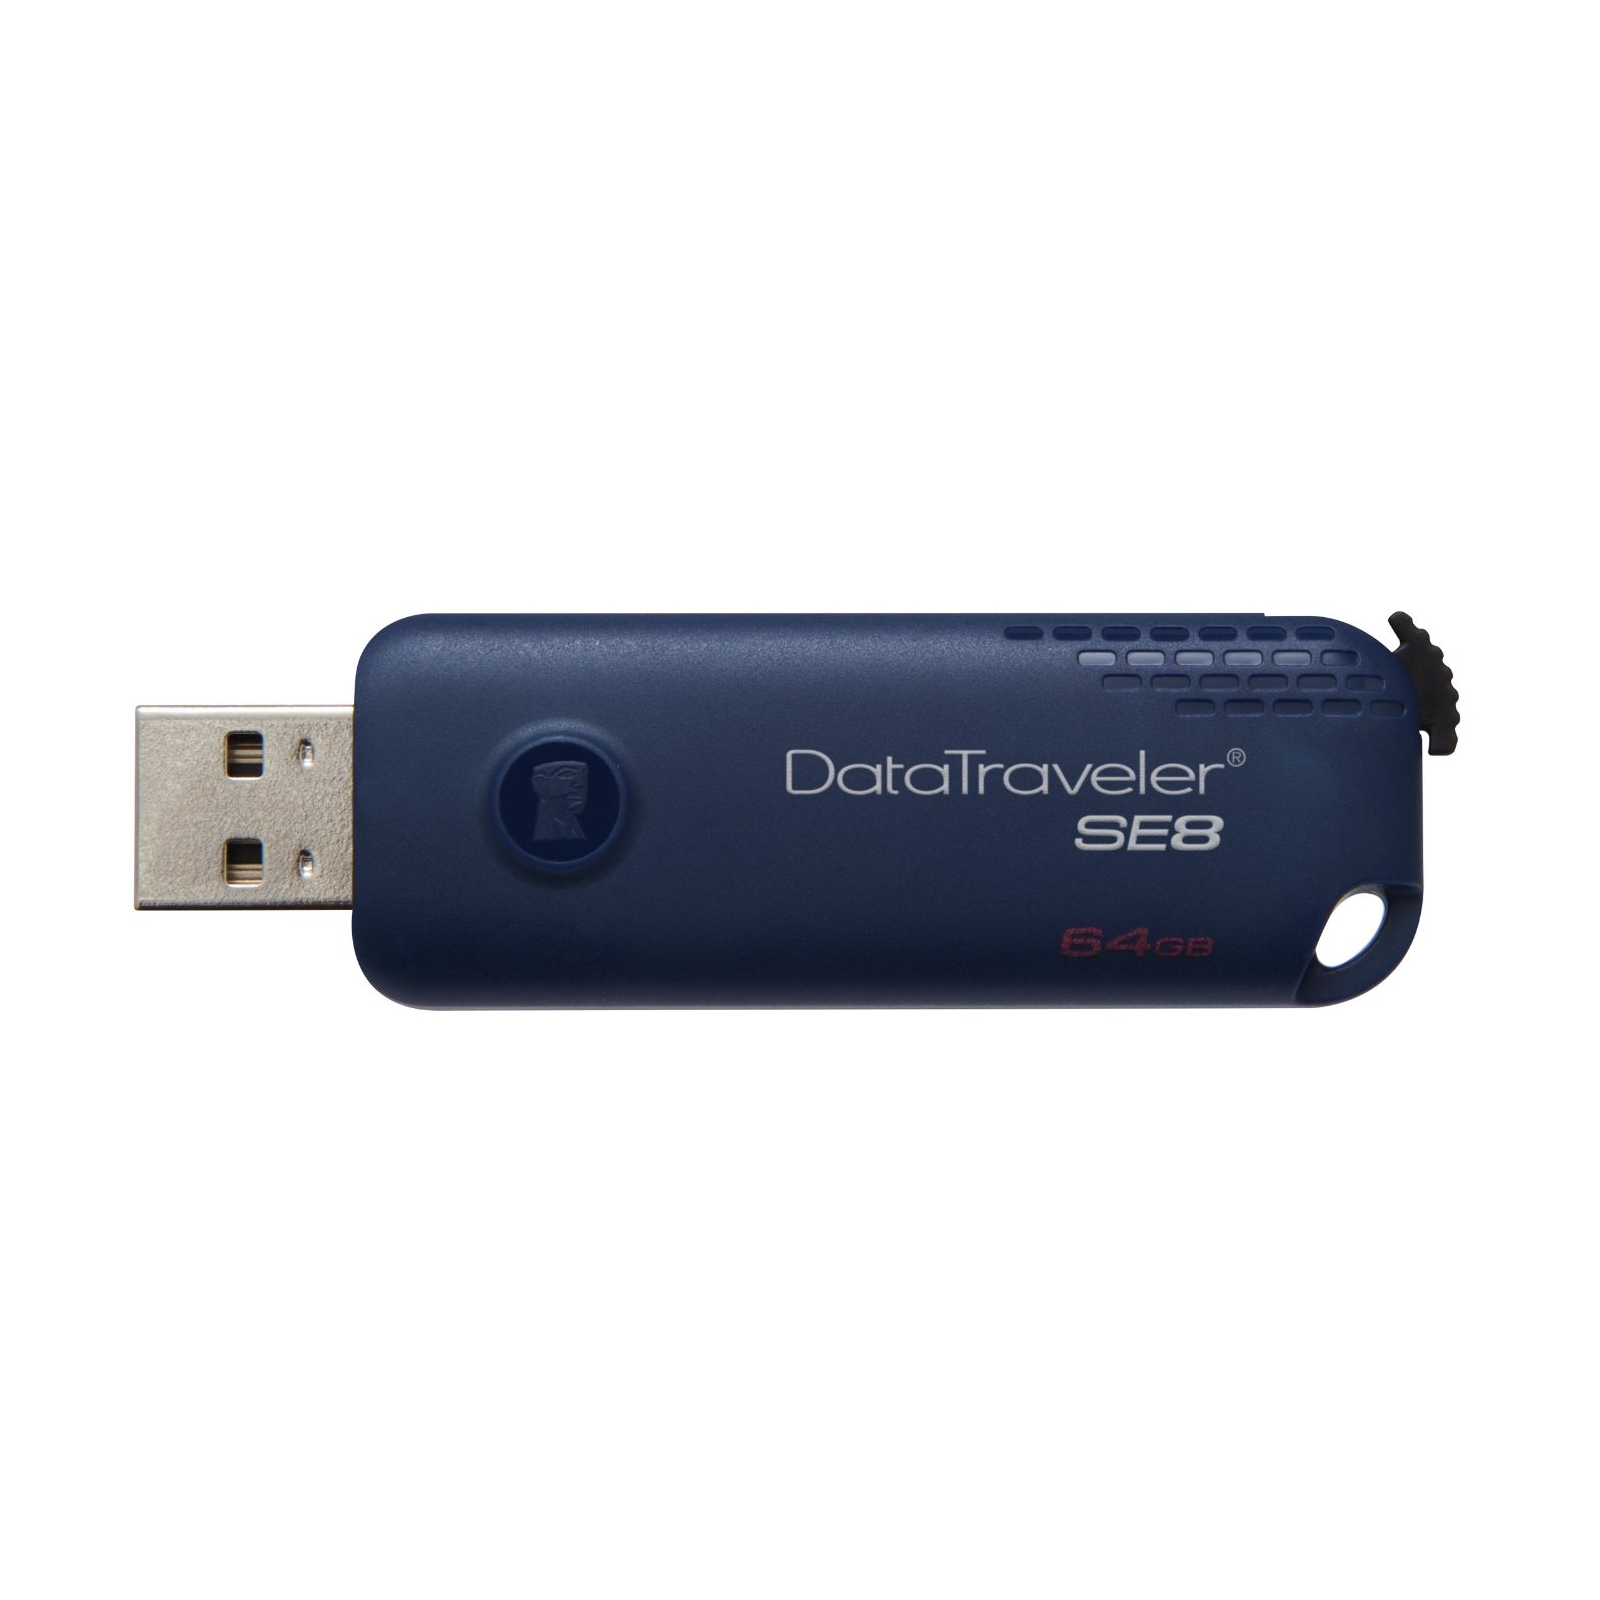 USB флеш накопичувач Kingston 64GB DT SE 8 Blue USB 2.0 (DTSE8/64GB) зображення 4